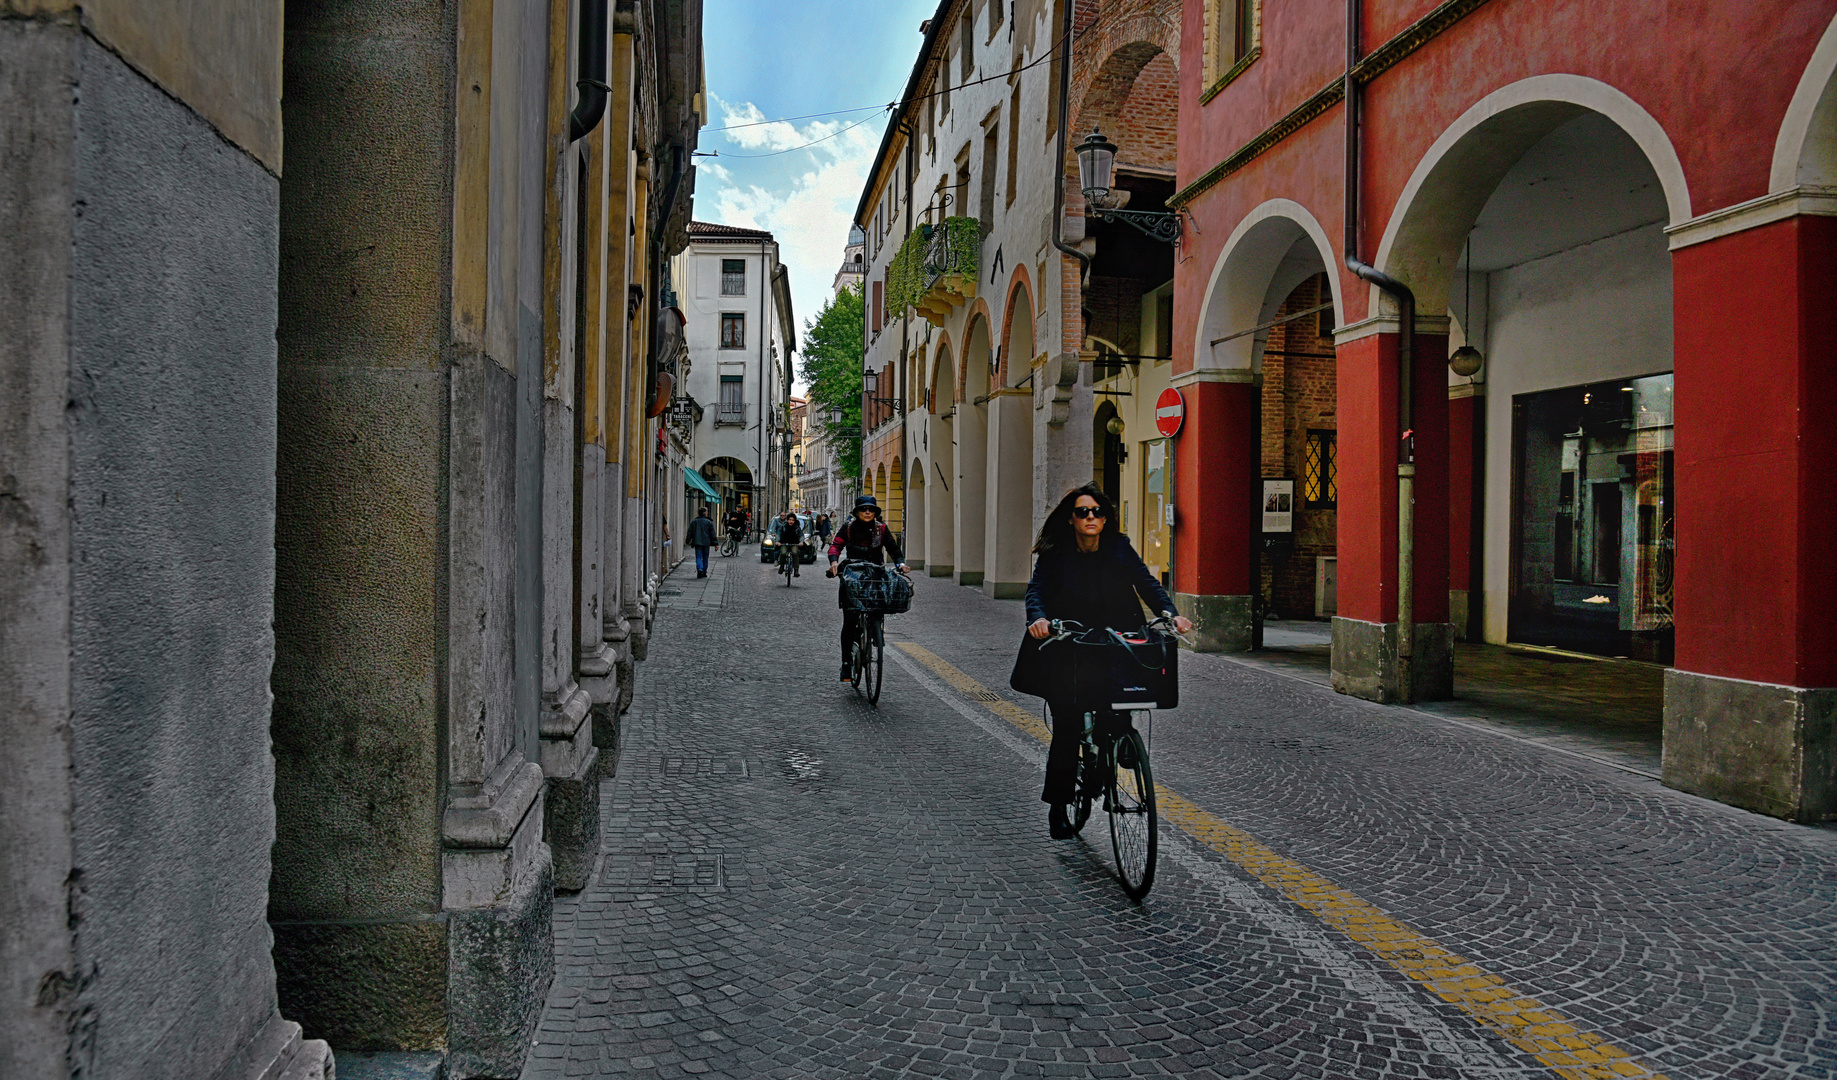 ITALIEN - Padua (Padova) -